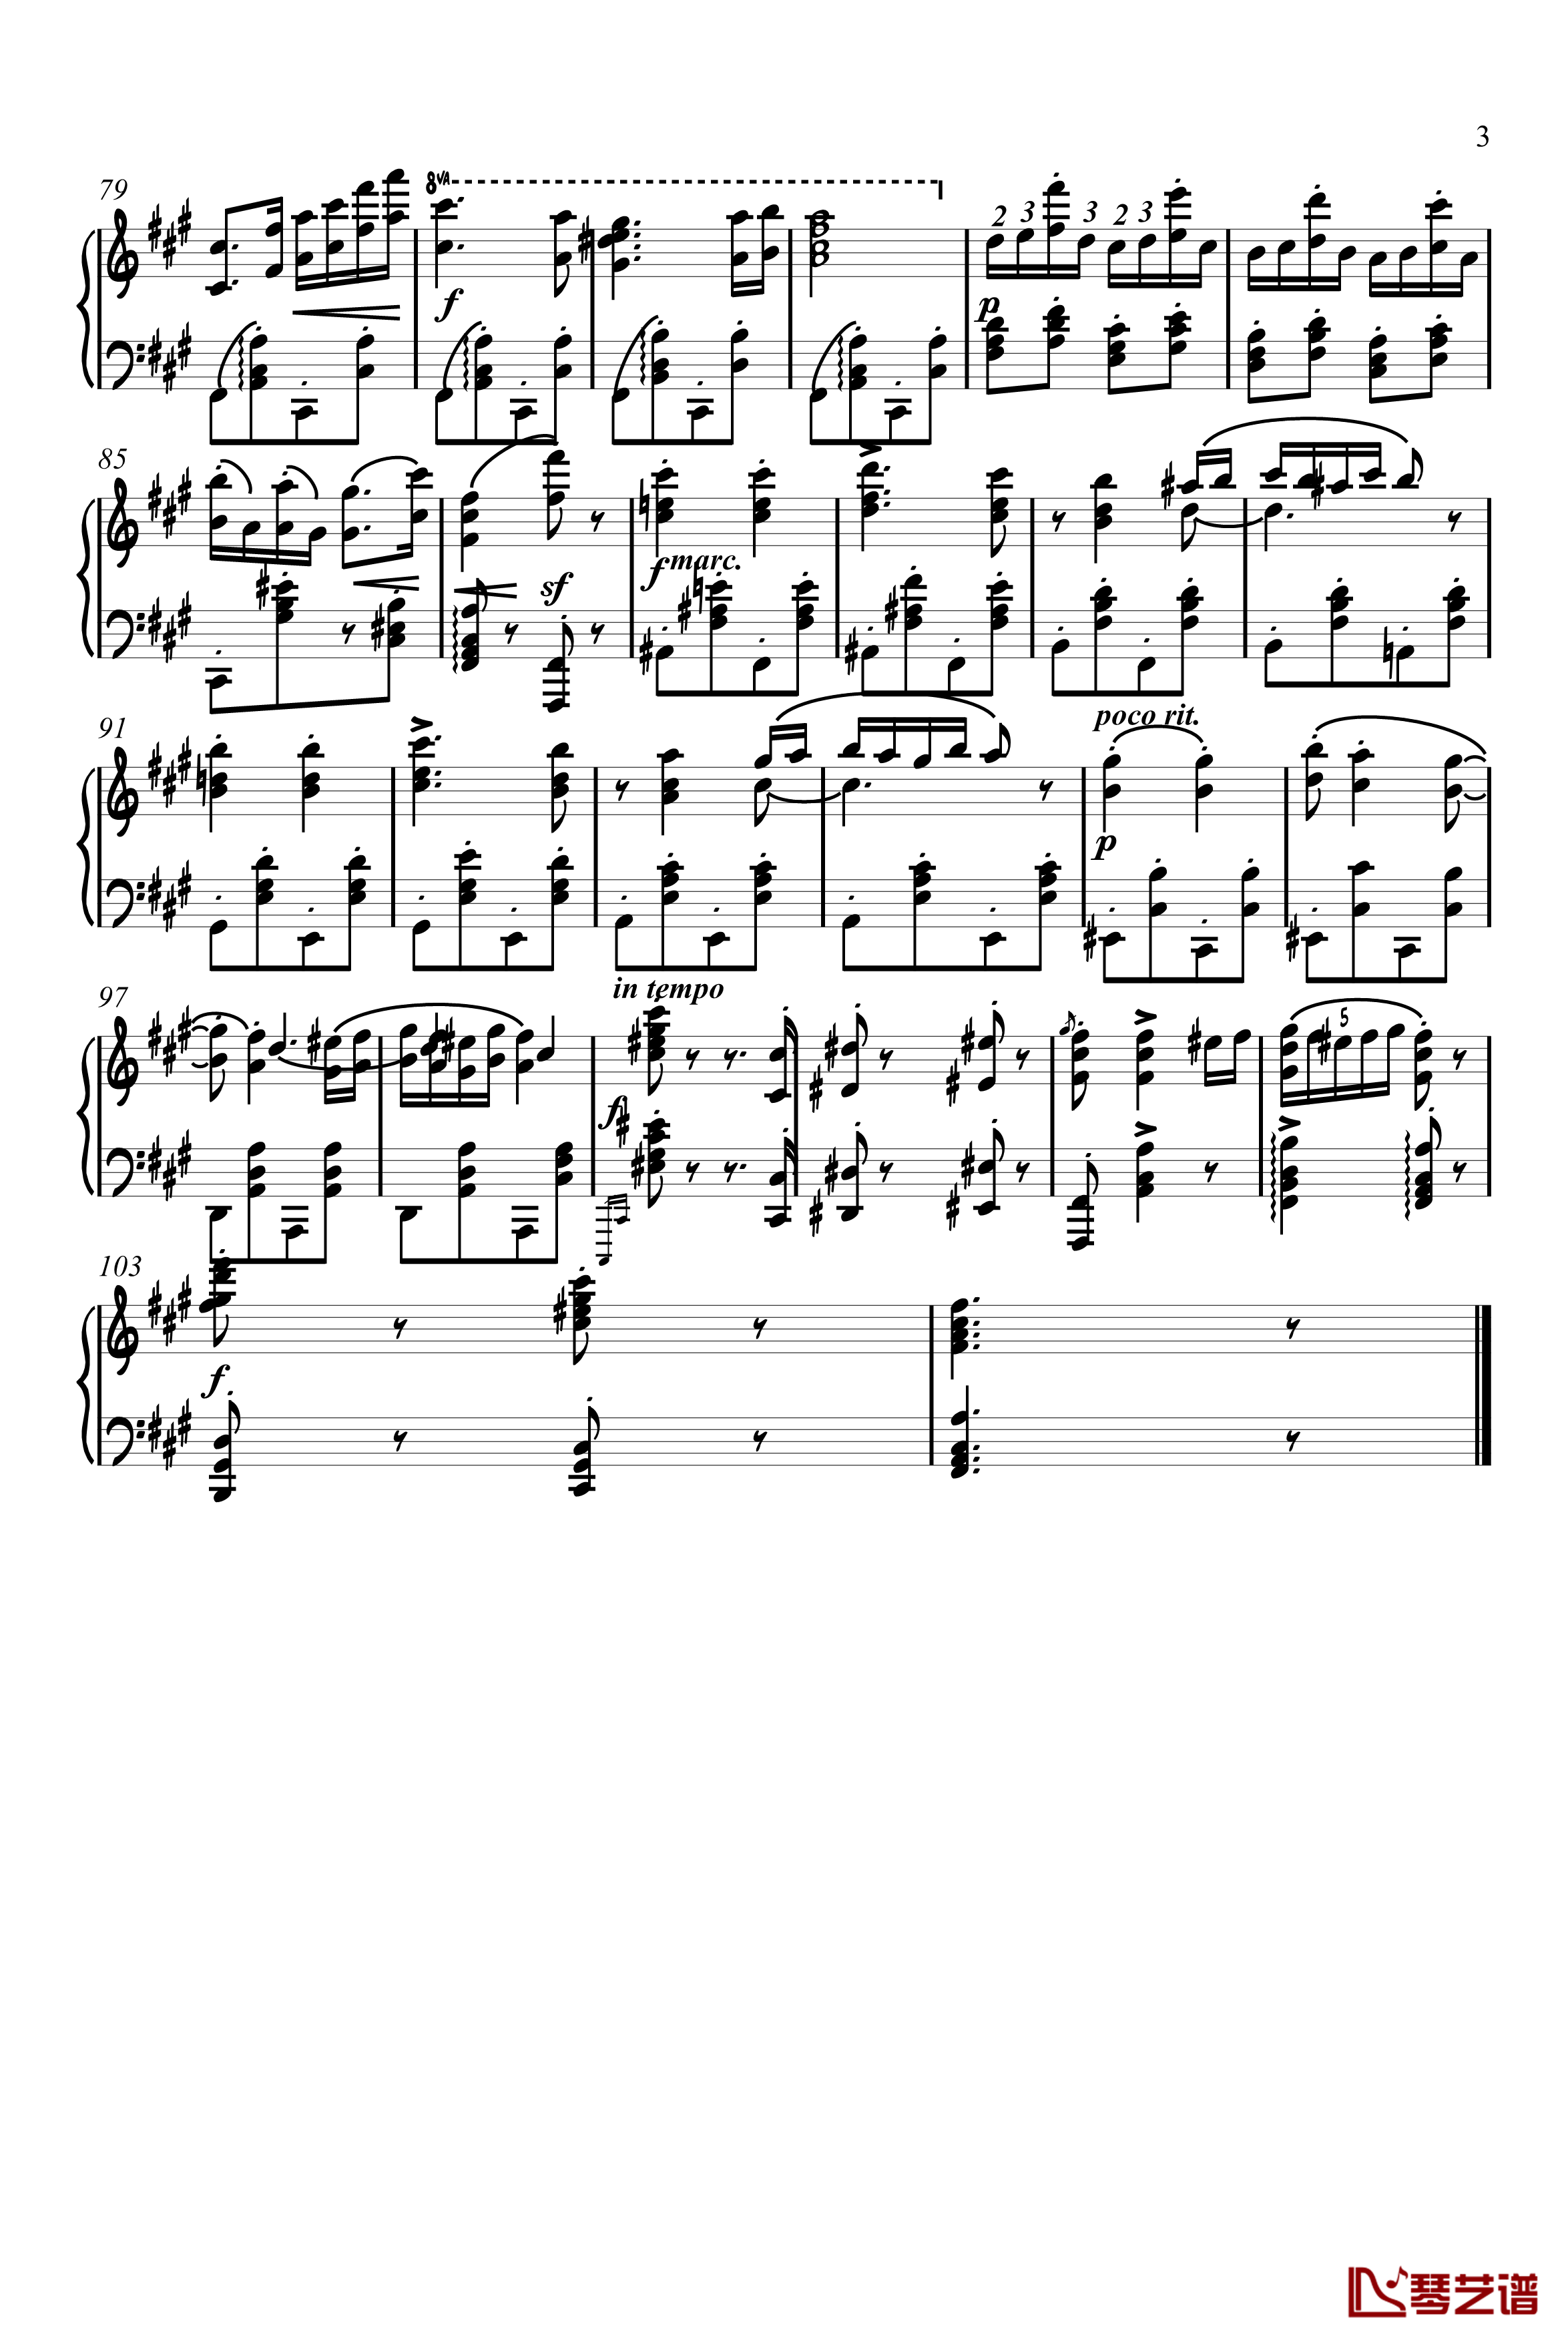 匈牙利舞曲钢琴谱-独奏版-勃拉姆斯-Brahms3